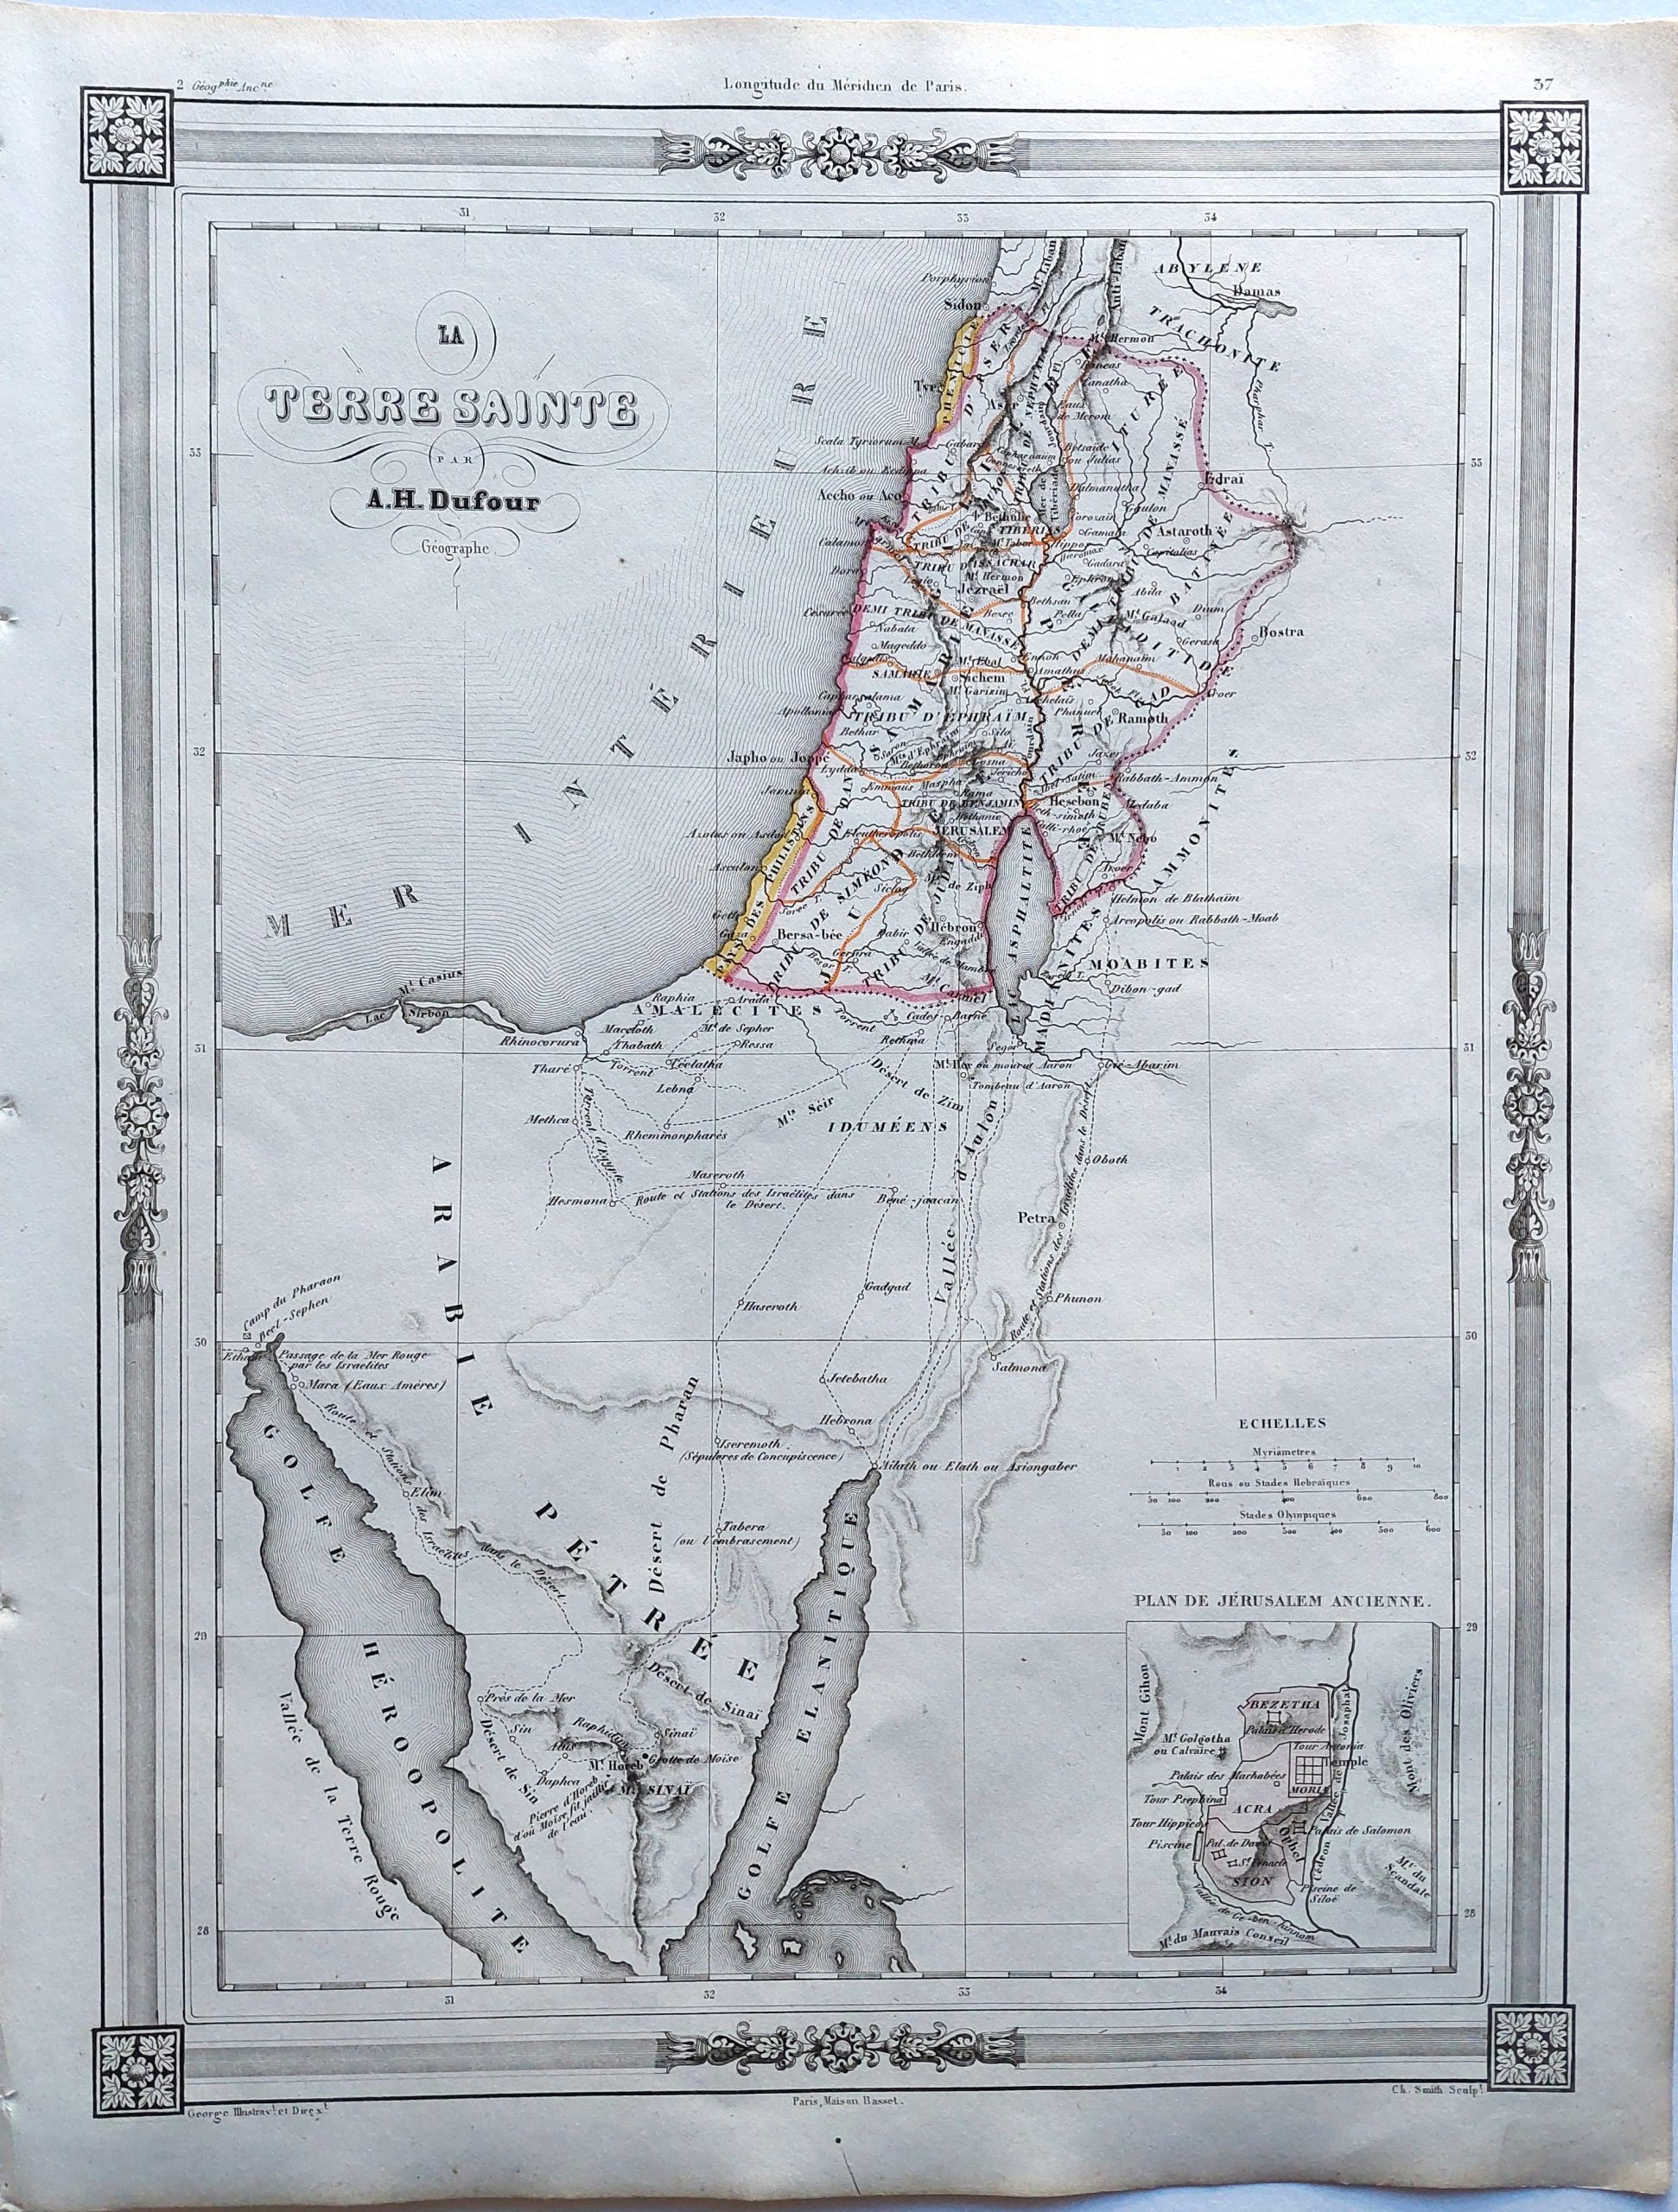 La Terre Sainte par A. H. Dufour Geographe